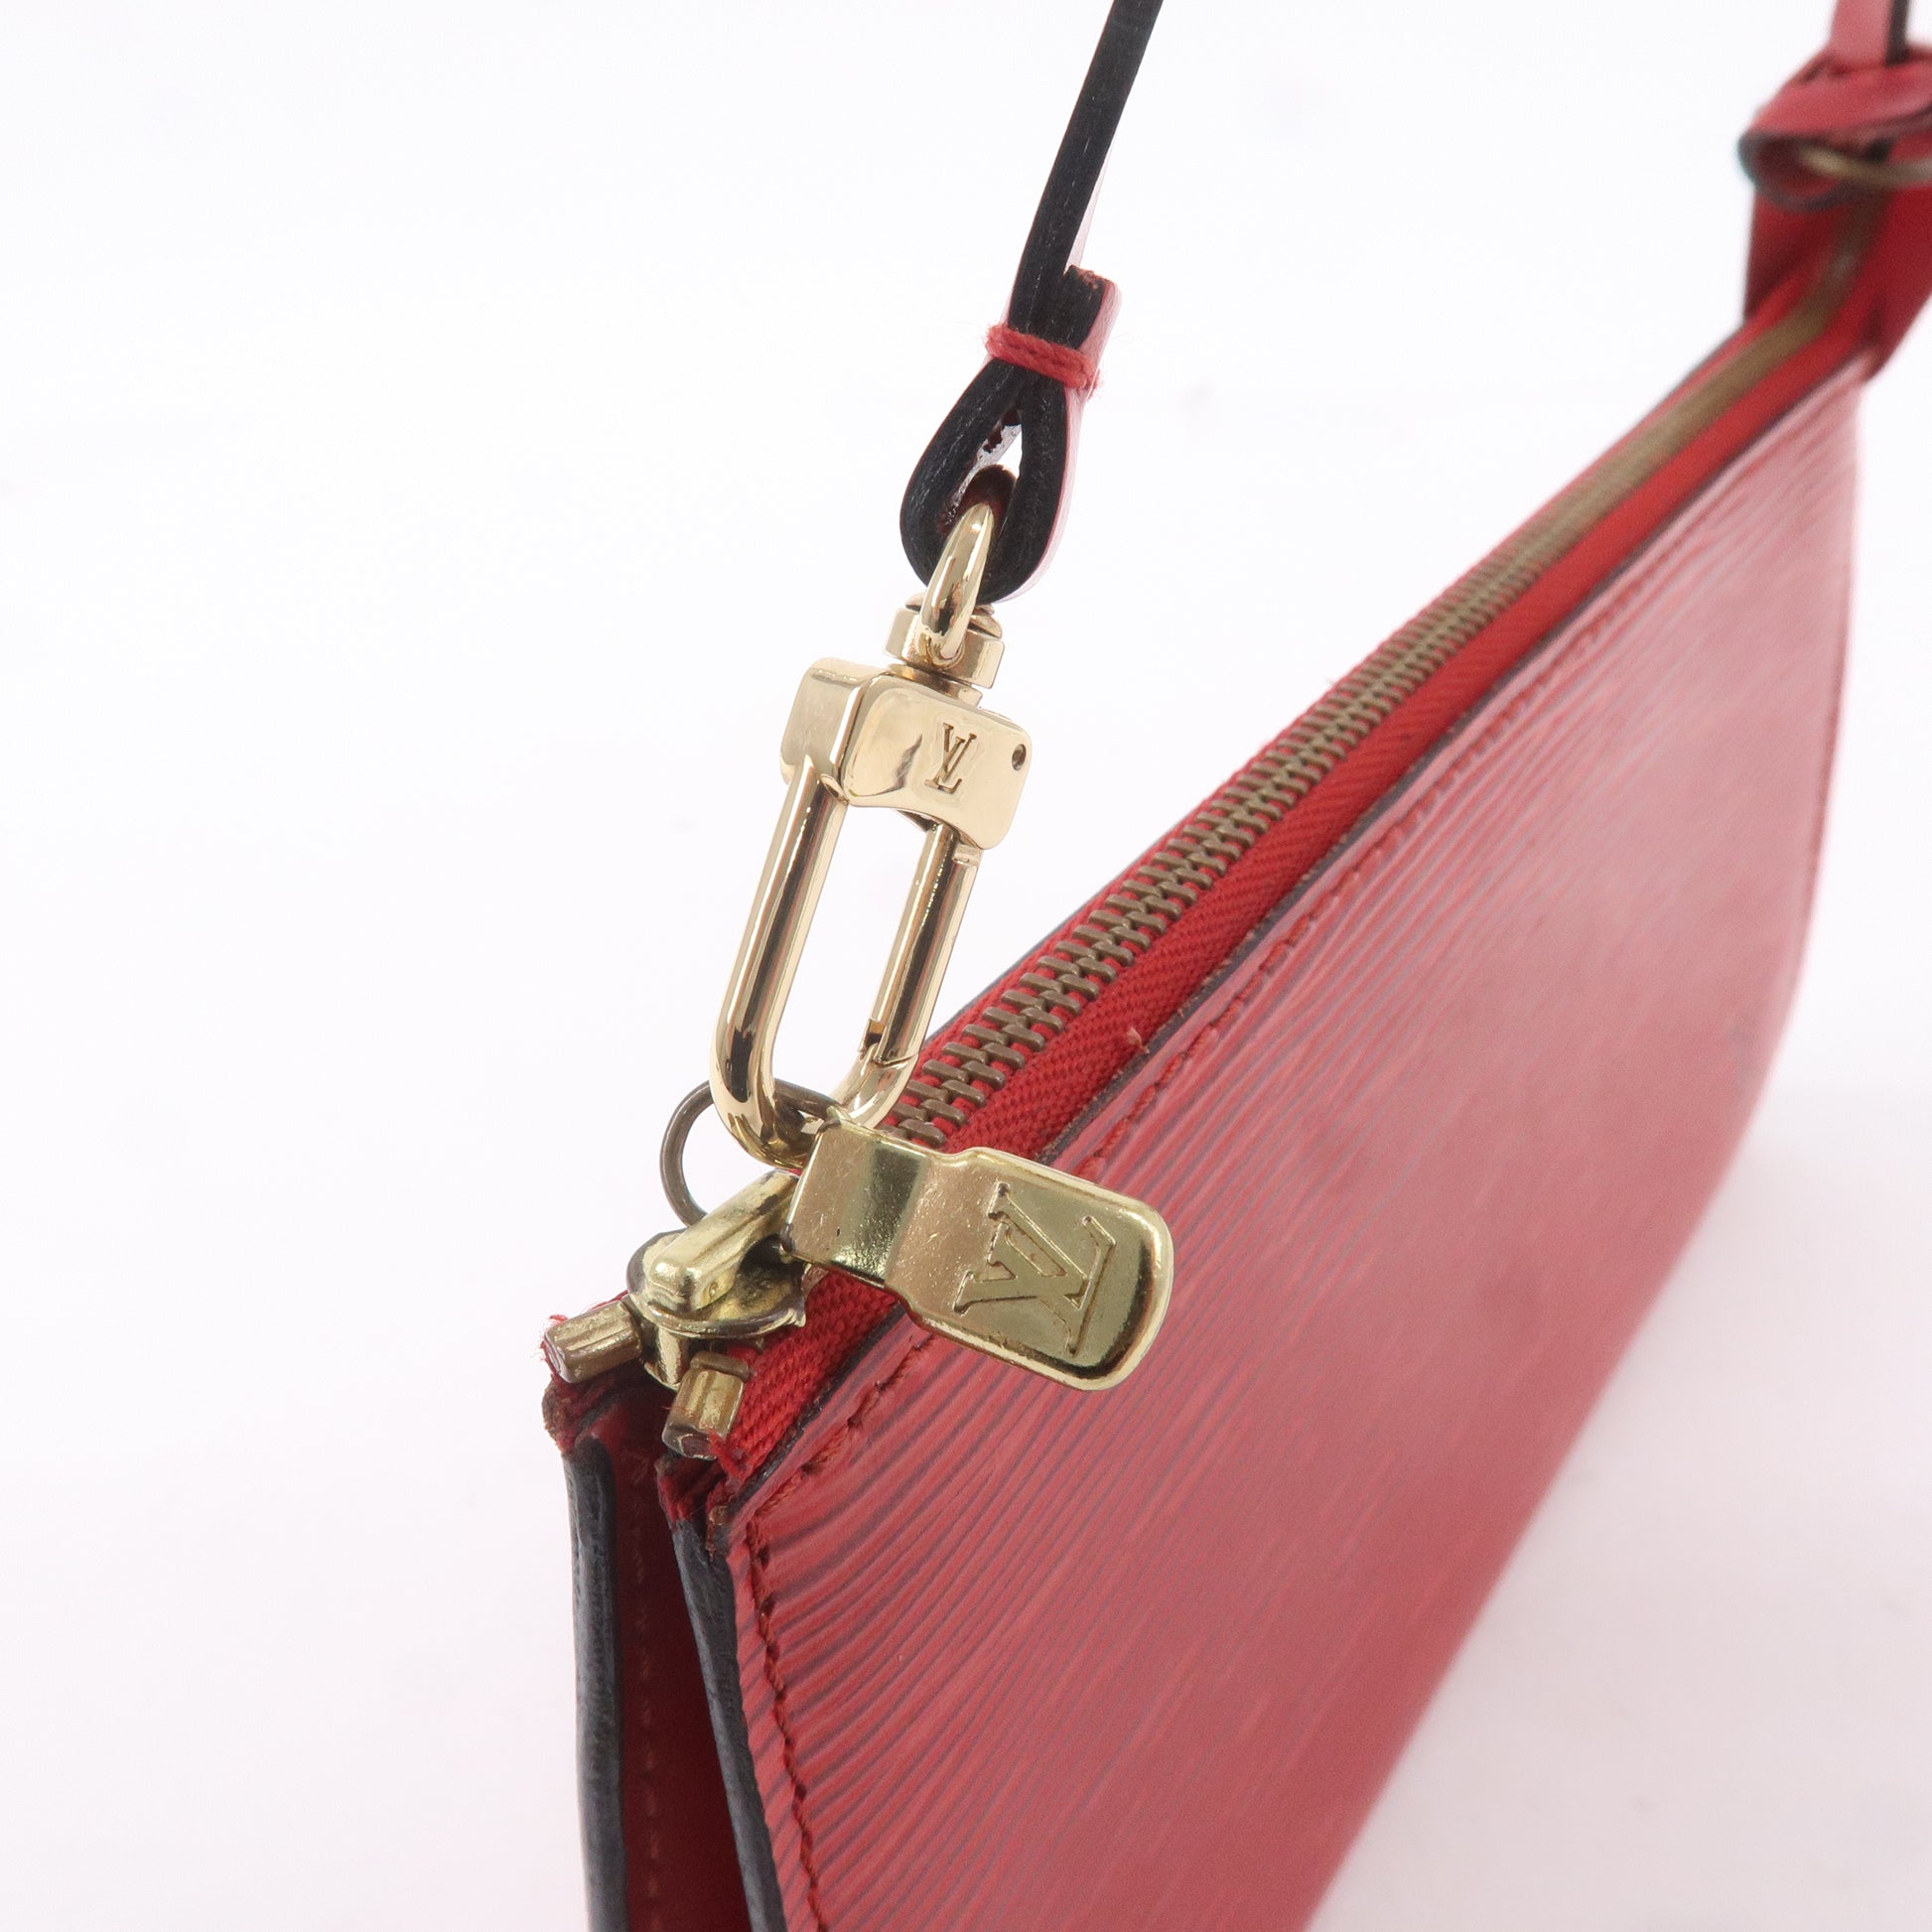 Louis Vuitton Red Epi Leather Pochette Accessoires Bag Louis